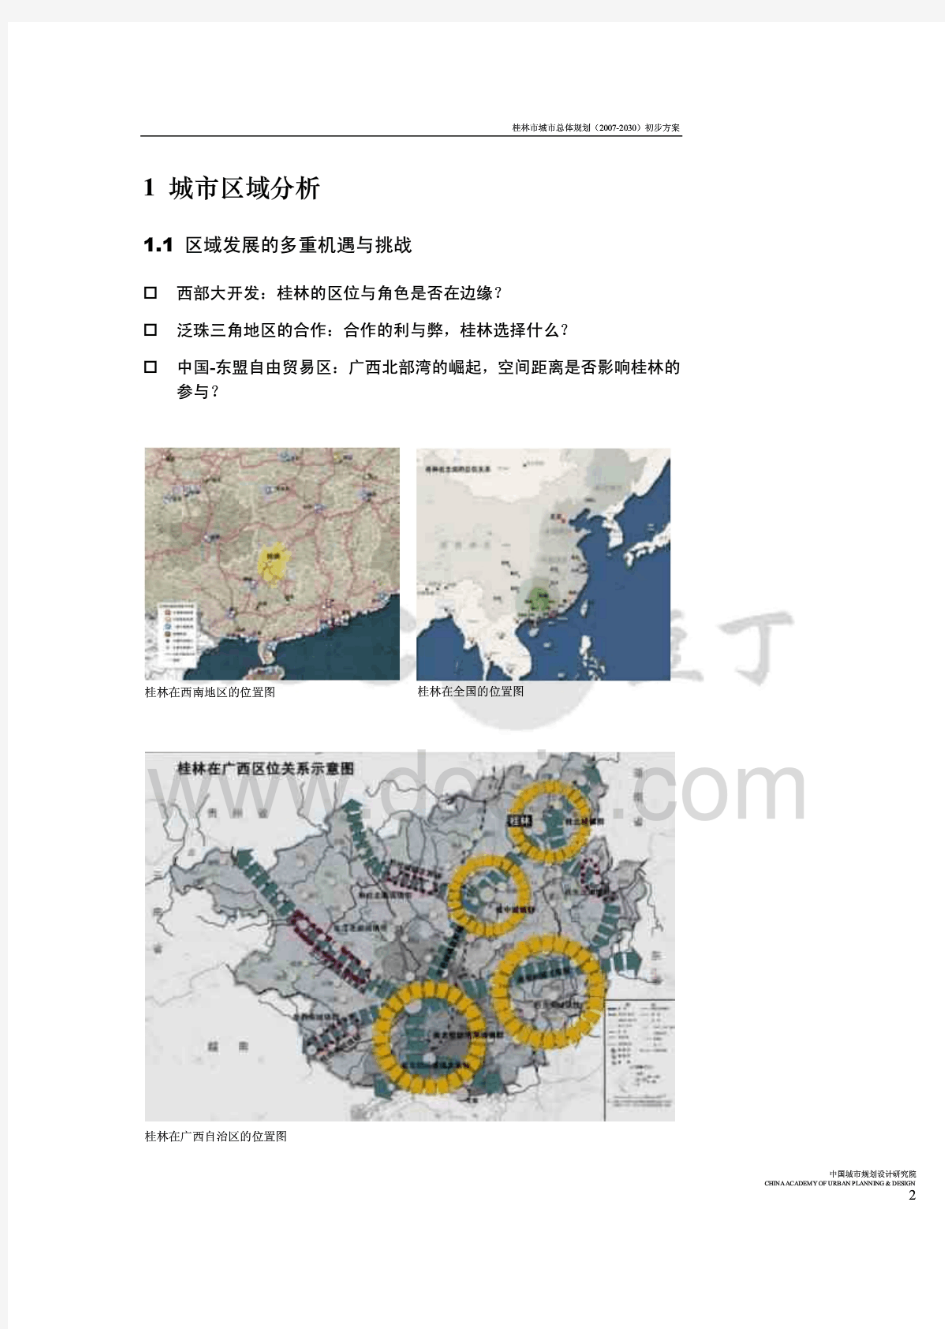 桂林市城市总体规划初步方案2008-2030[清华大学]